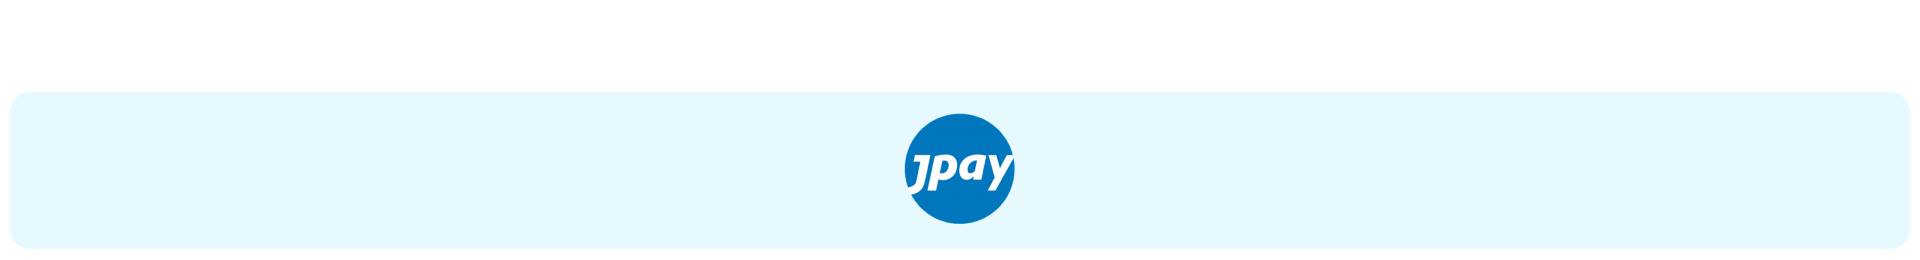 JPay logo